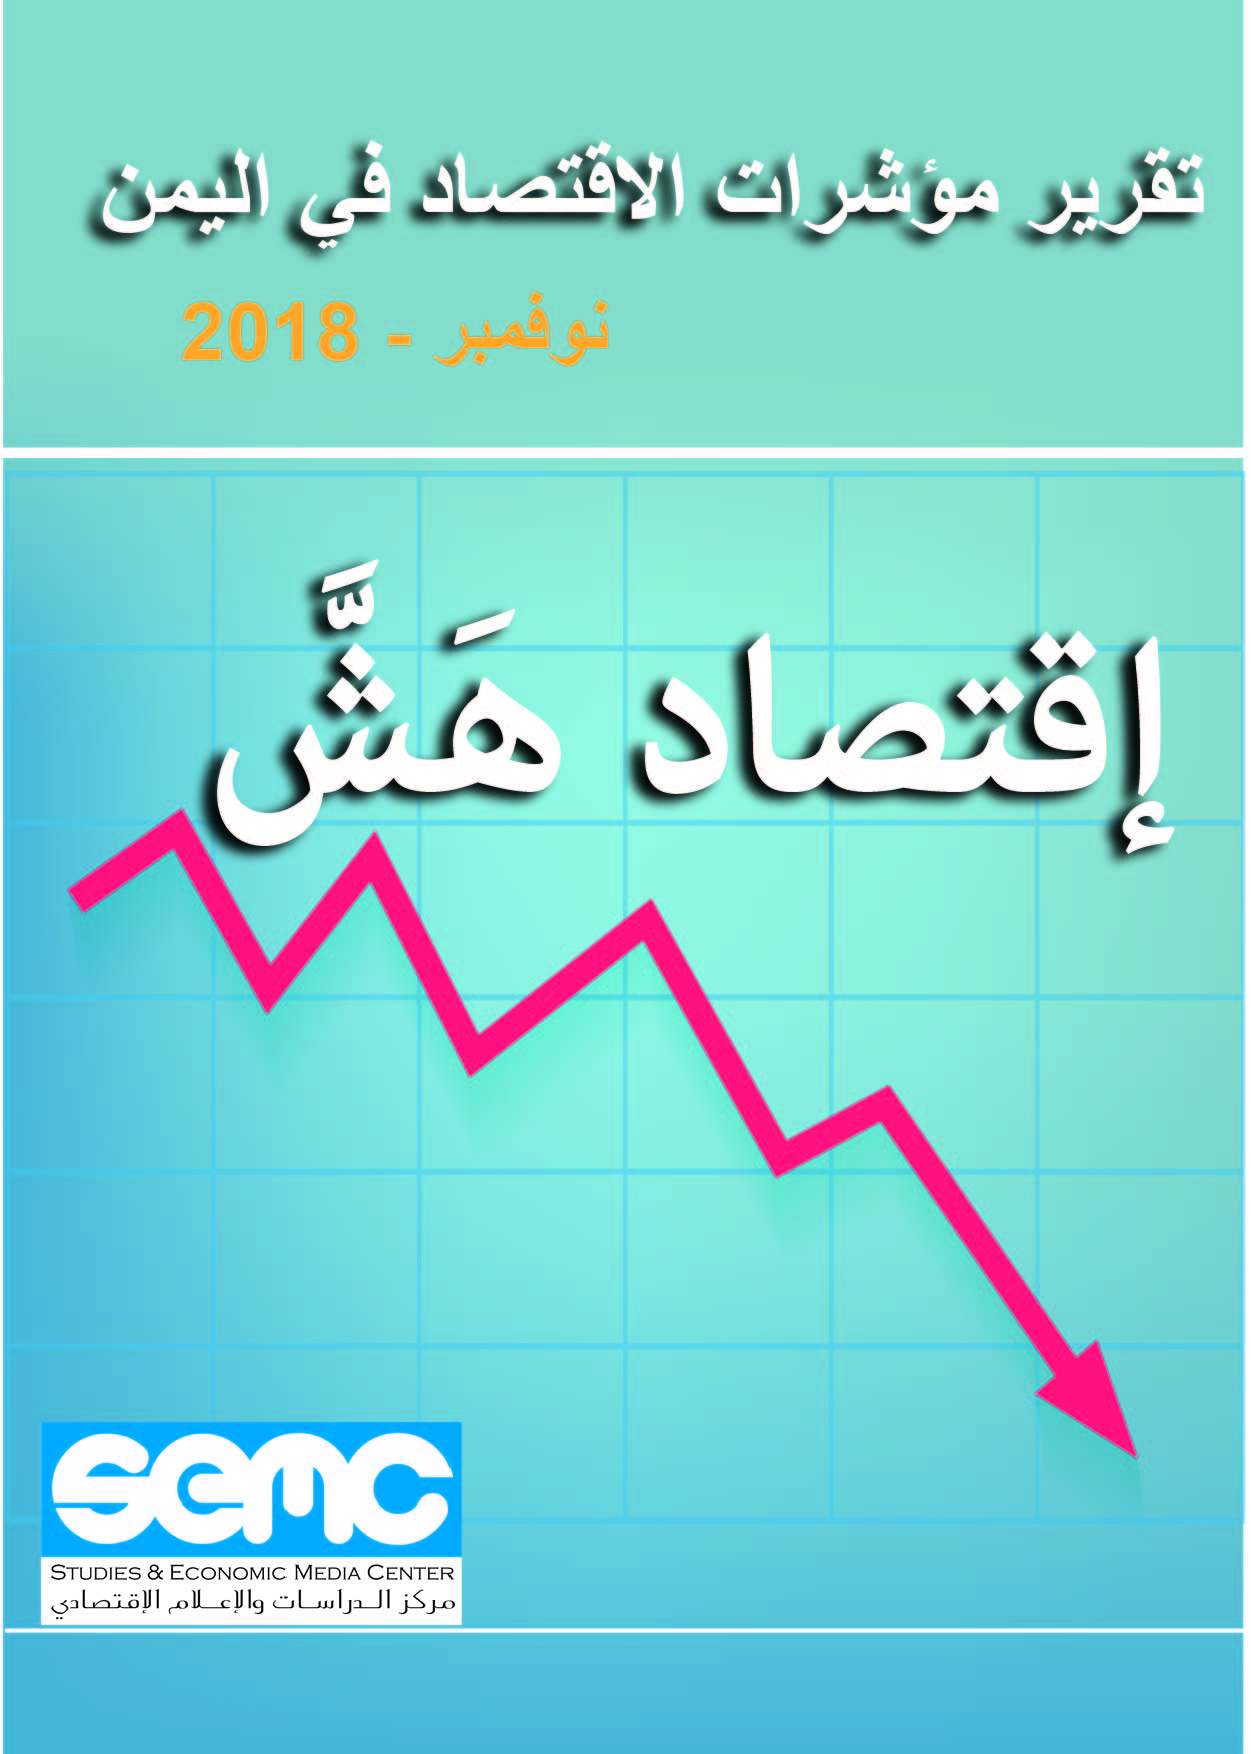 تقرير مؤشرات الاقتصاد في اليمن – نوفمبر 2018